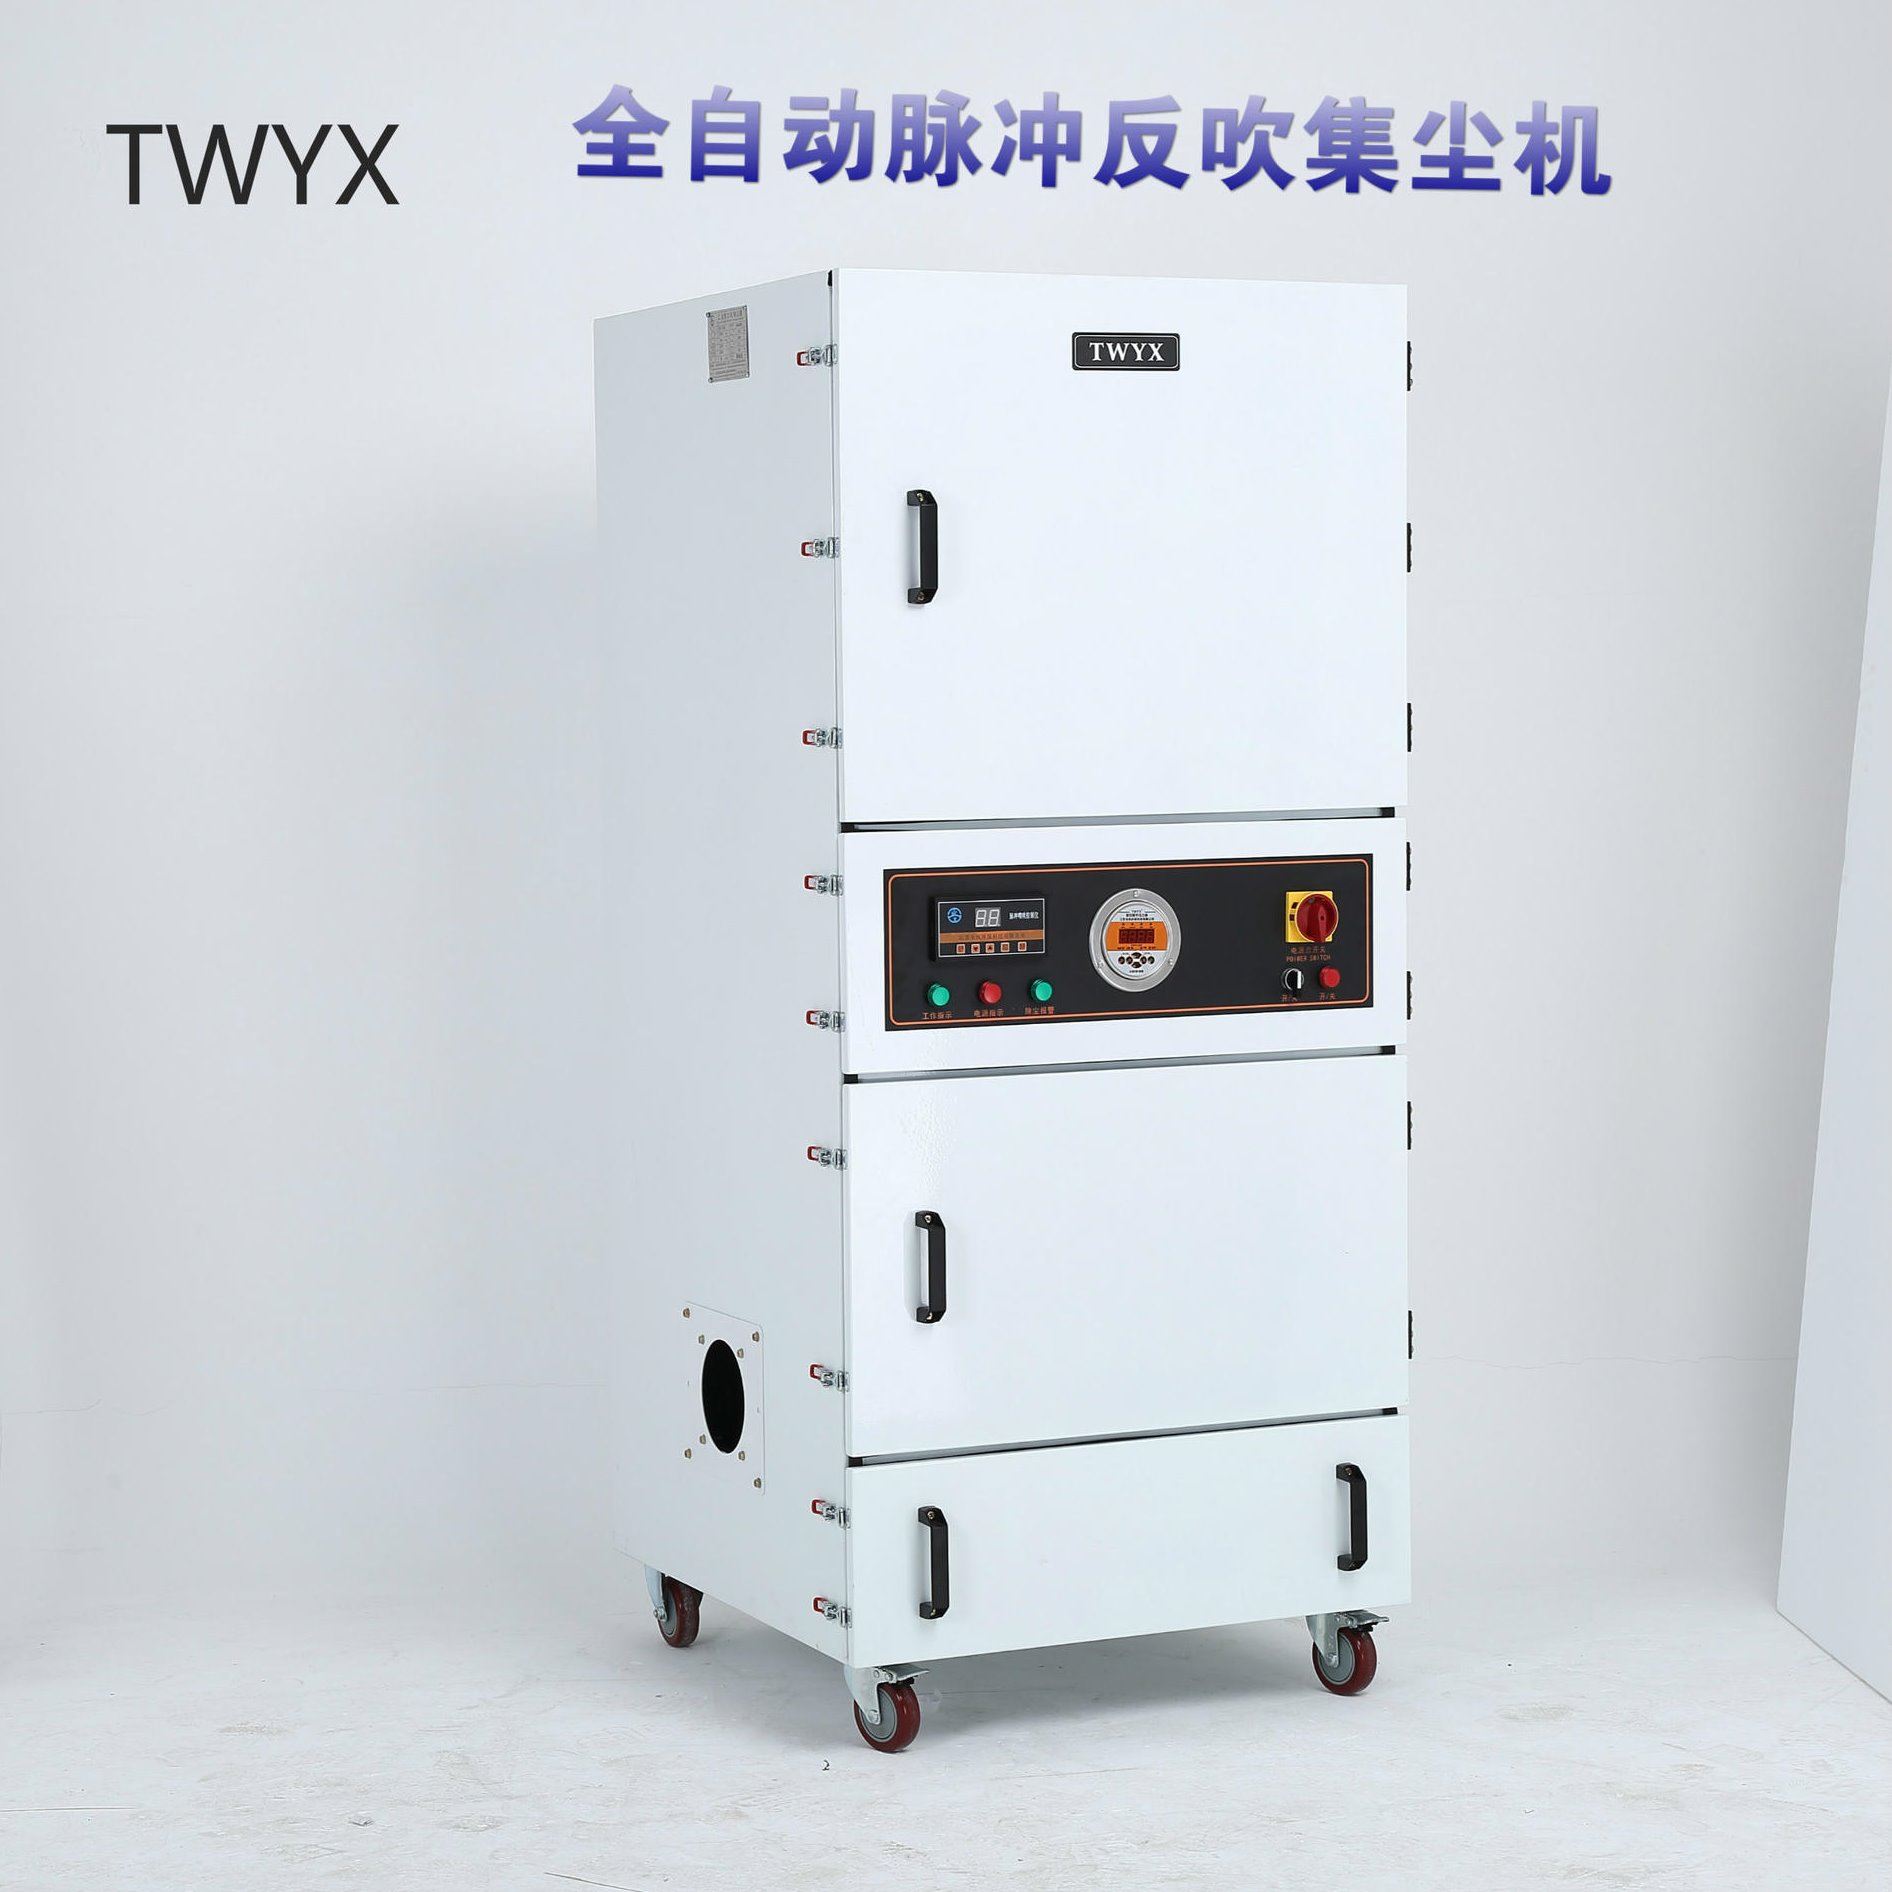 工厂直销 TWYX品牌 大吸力除尘器 环评专用工业集尘器 环保设备